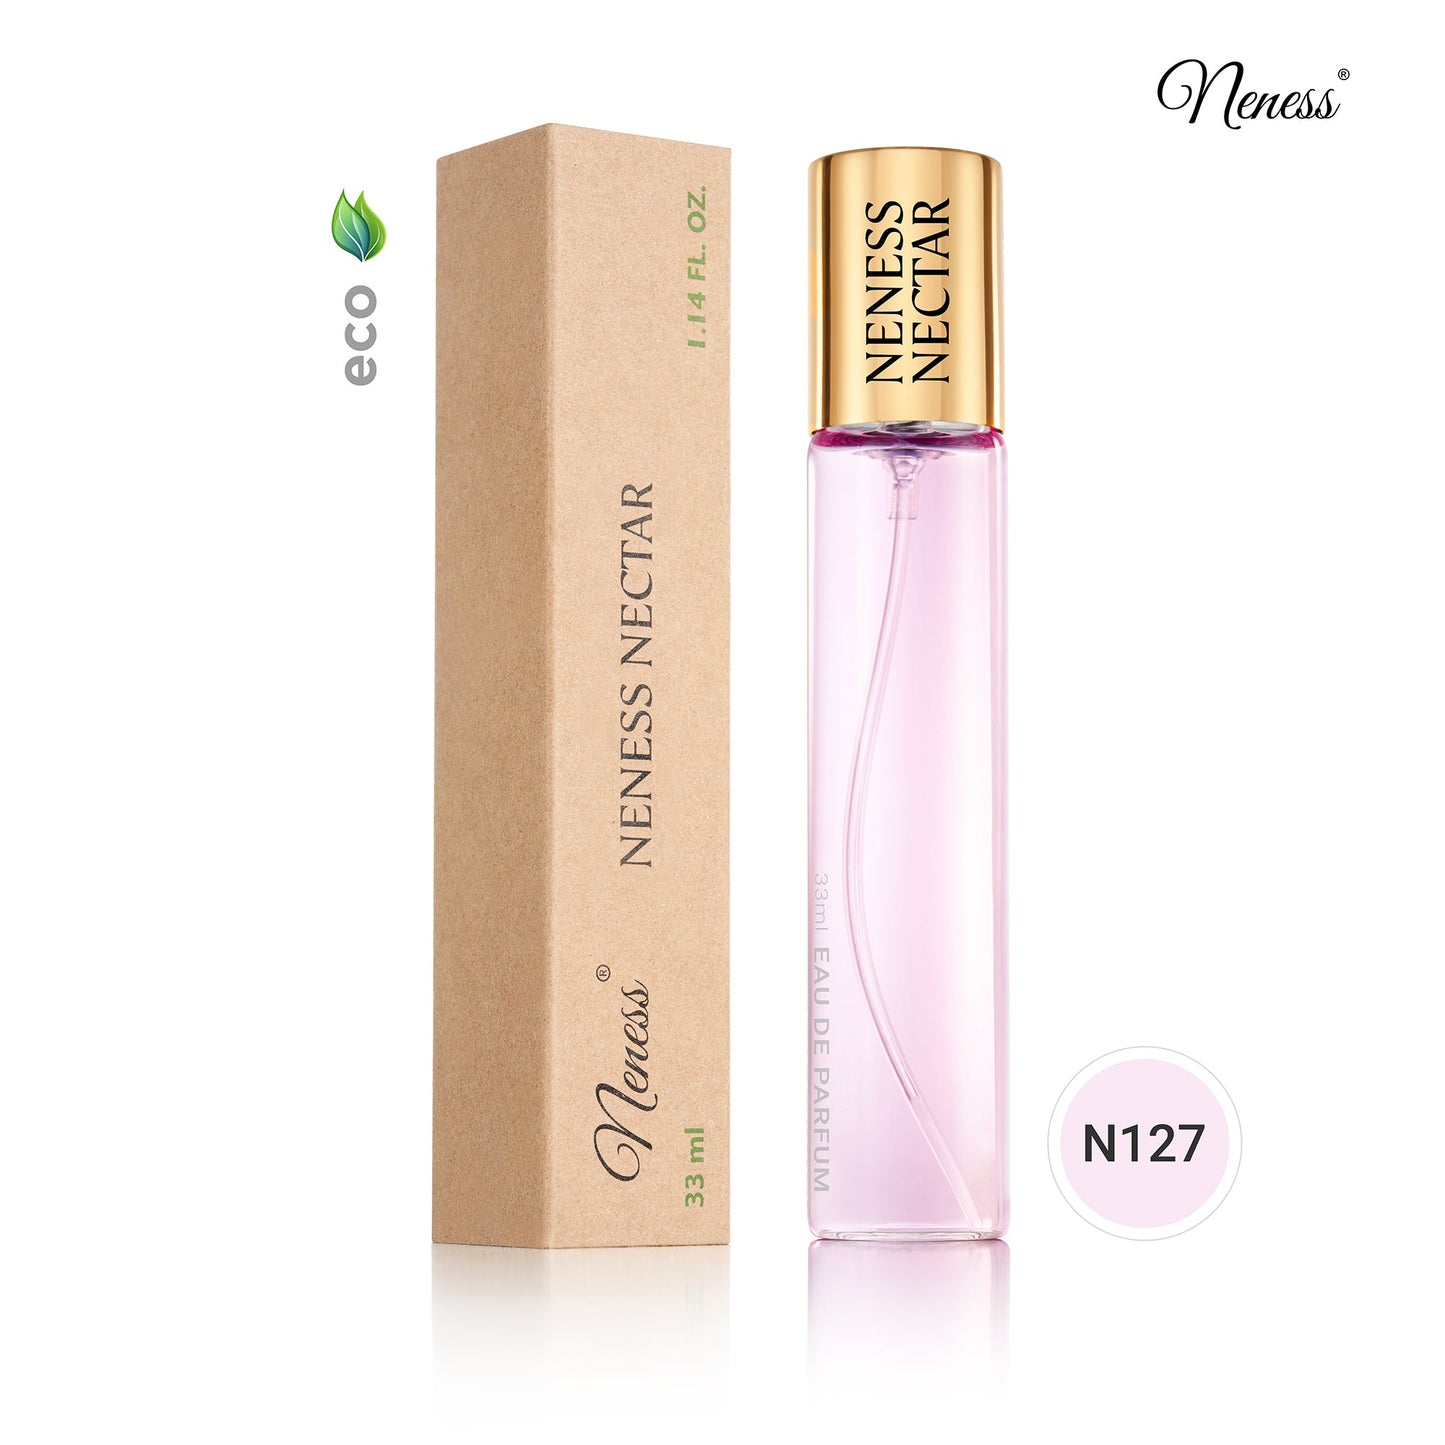 N127. Neness Nectar - 33 ml - Perfume For Women